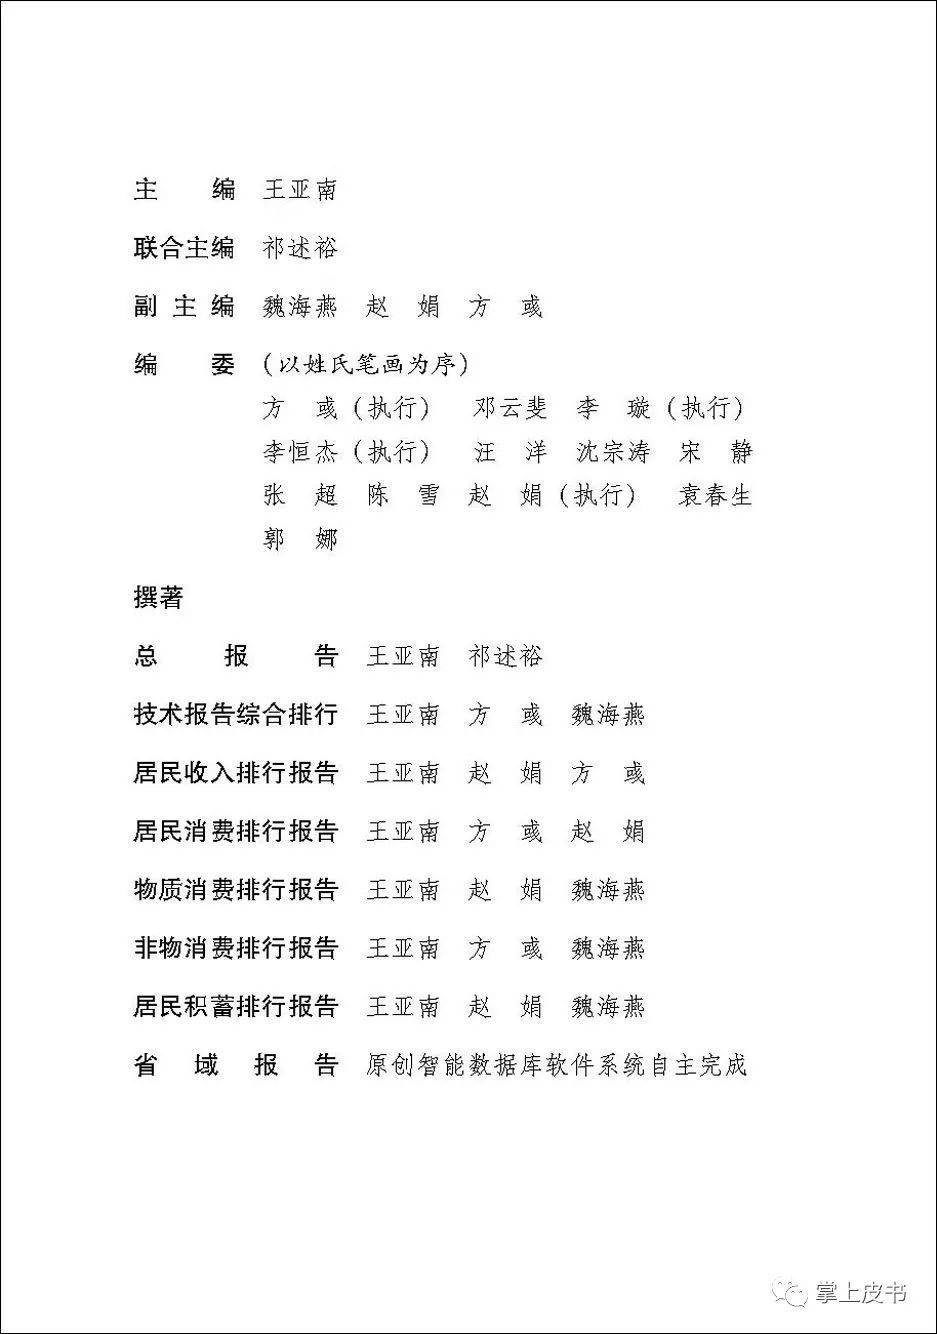 《中国人民生活发展指数检测报告》扉页:撰著署名《中国人民生活发展